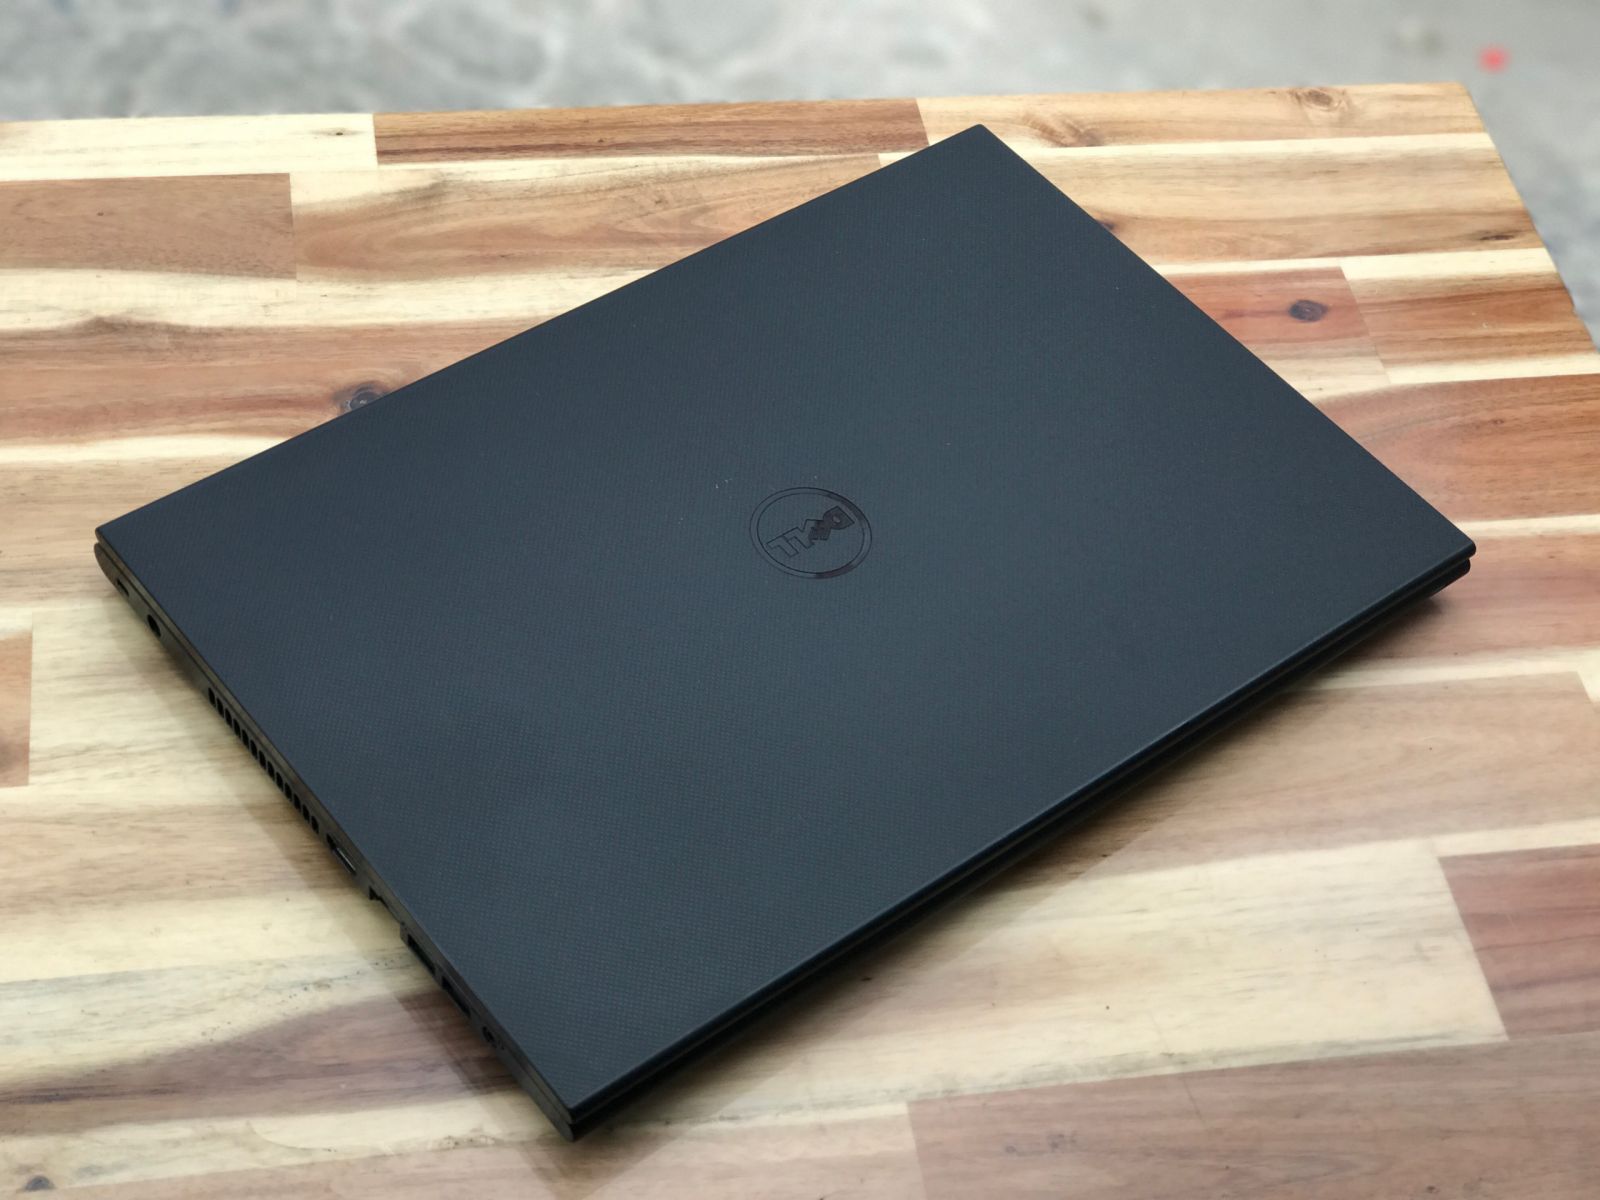 Laptop Dell Inspiron 3542, i7 4510U 8G SSD128+320G Vga GT840 2G Đẹp Ke - 4